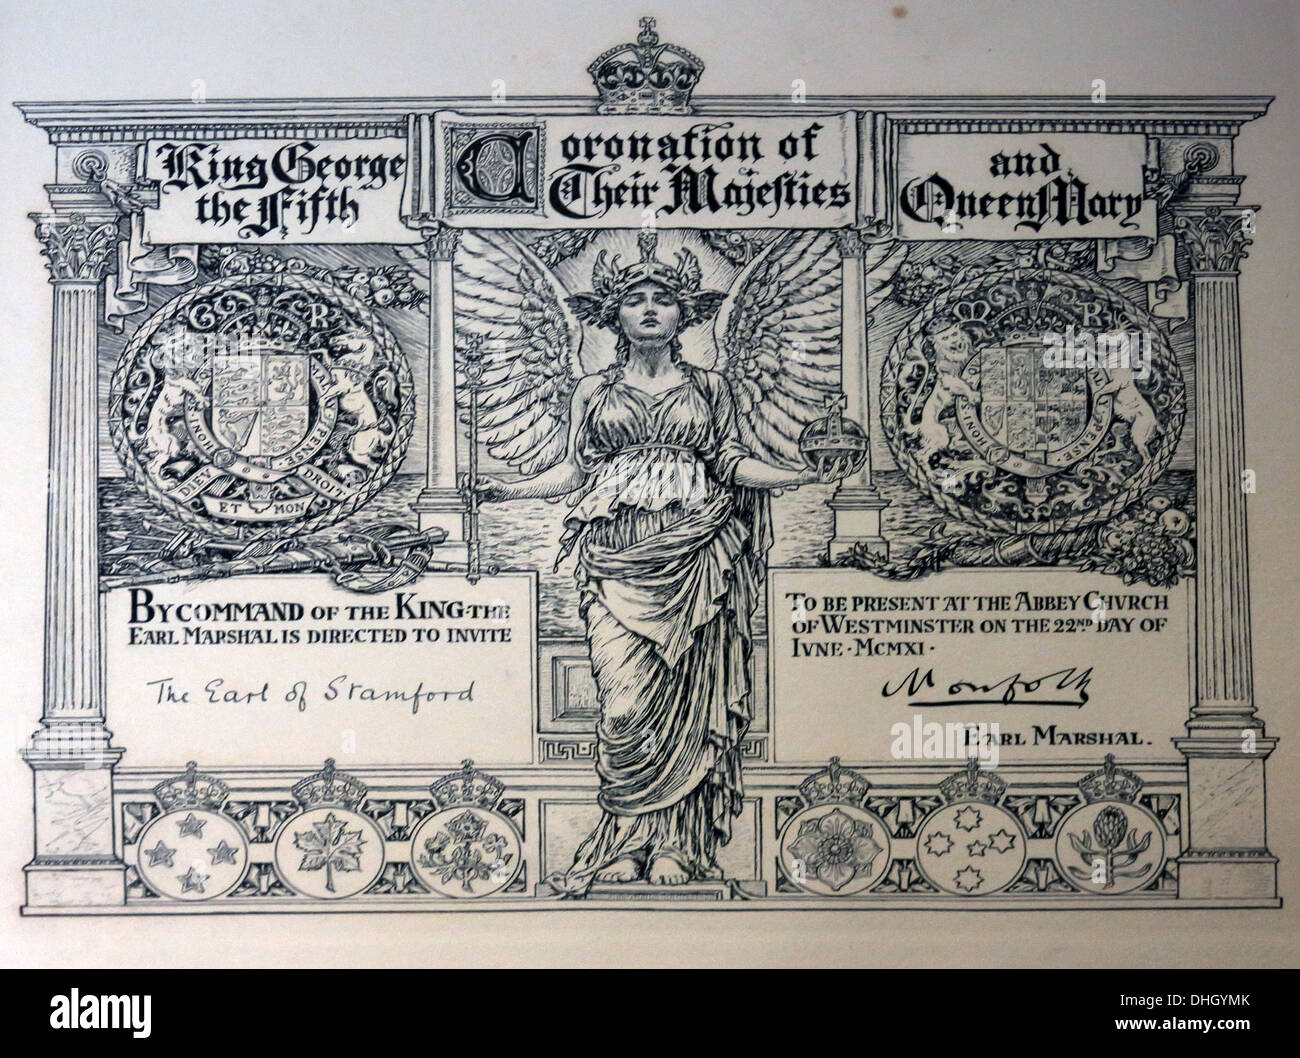 Heißes Ticket für die Krönung von König George V., Königin Mary, 1911. Eintritt einer Gräfin von Stamford, aus Dunham Massey NT Altrincham Cheshire, England Stockfoto